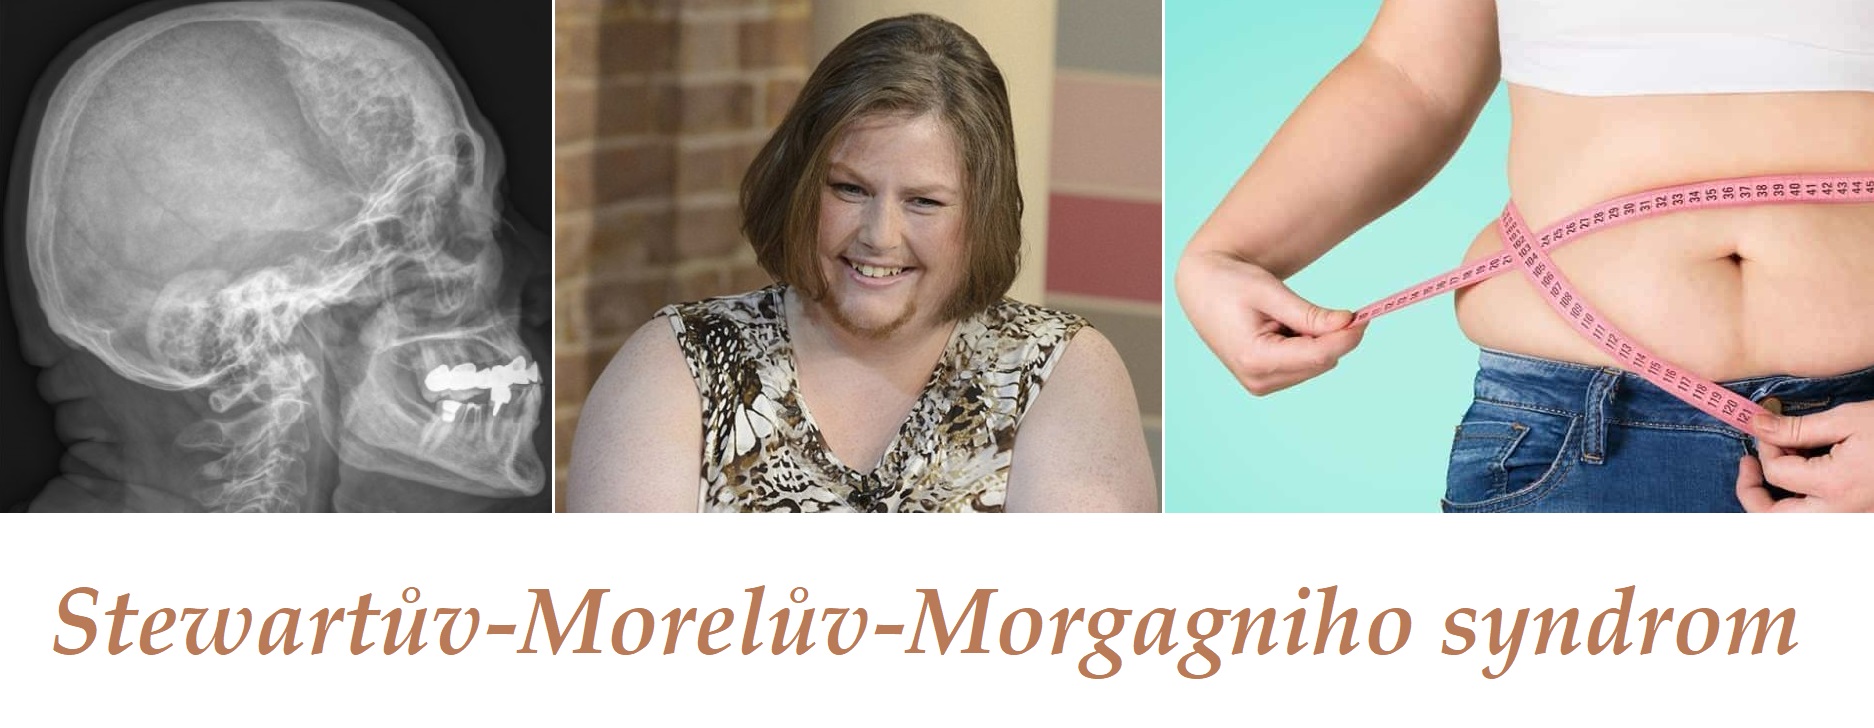 Stewartův-Morelův-Morgagniho syndrom – příznaky, projevy, symptomy, příčina, léčba